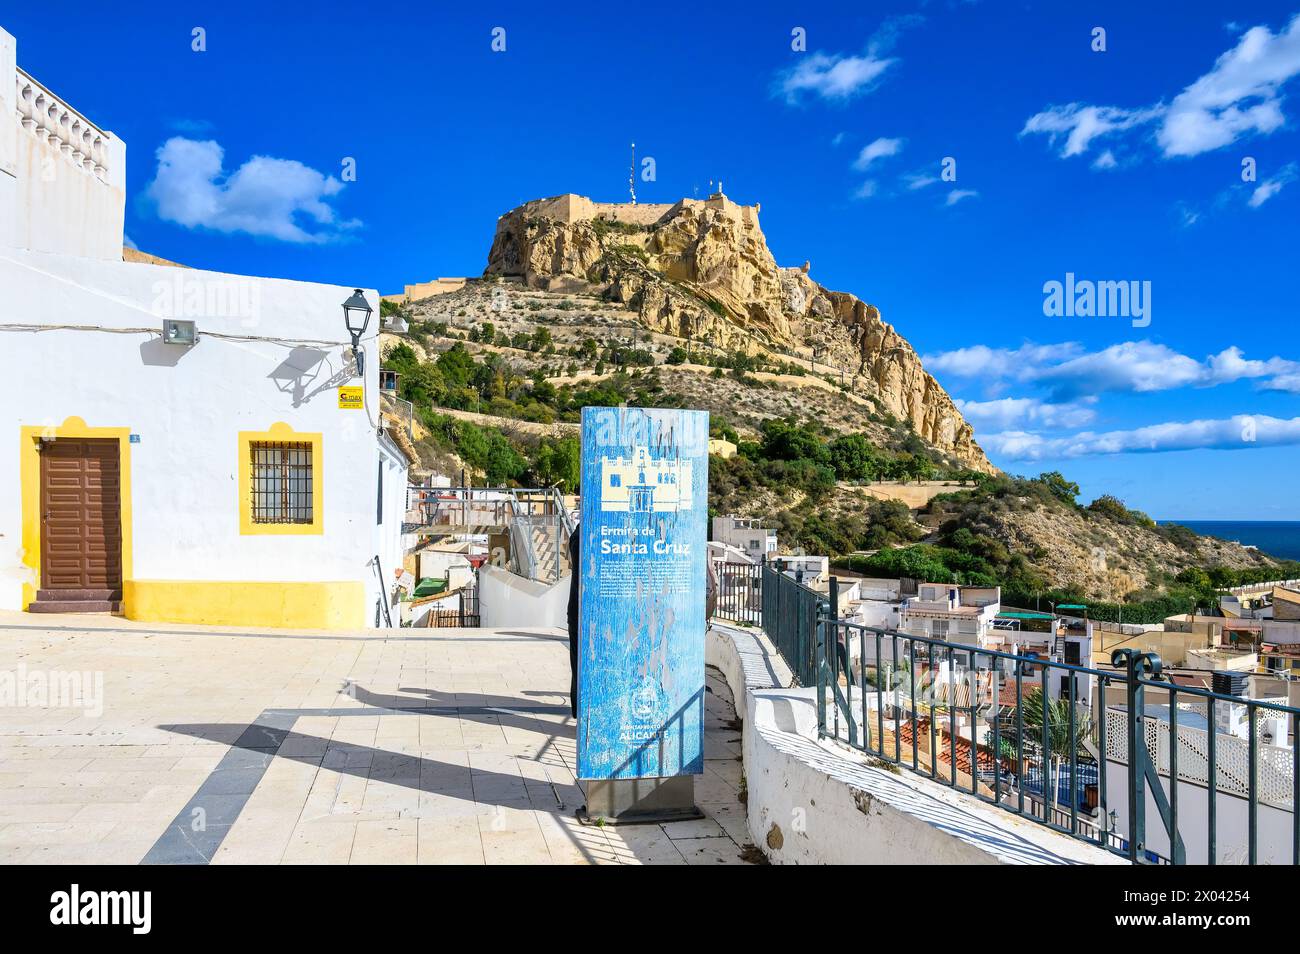 El fuerte del castillo de Santa Bárbara desde un punto de observación en el distrito de Santa Cruz, Alicante, España Foto de stock